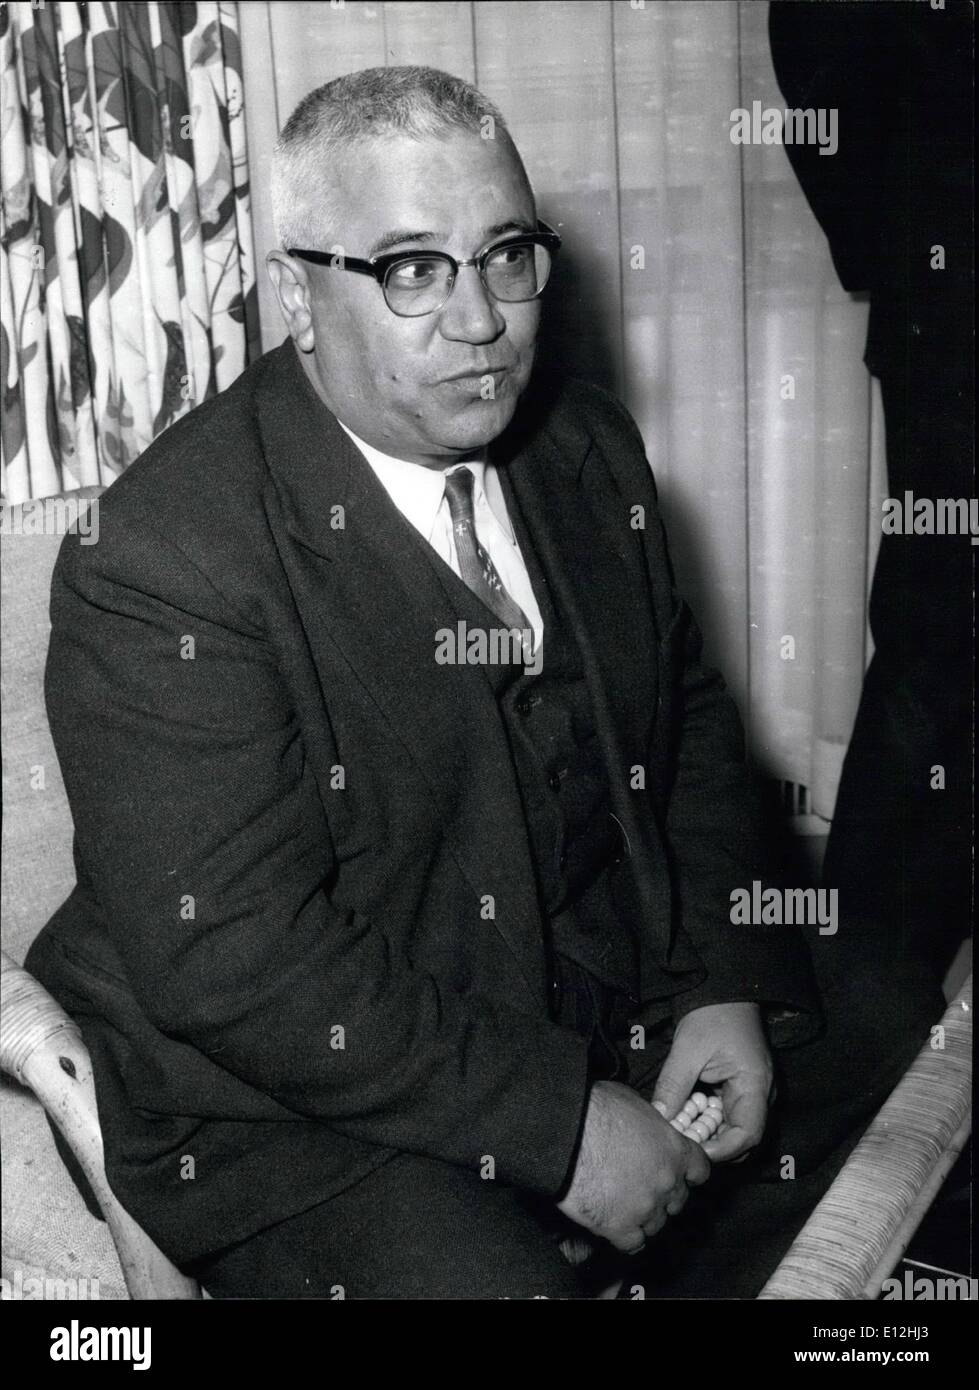 24 février 2012 - Les membres du Cabinet iranien interrompu leur tournée en Allemagne à Düsseldorf. OPS : Le ministre iranien des Douanes le général Ali Sargam Agbar. Photo Keystone du 14 novembre 1957 Banque D'Images